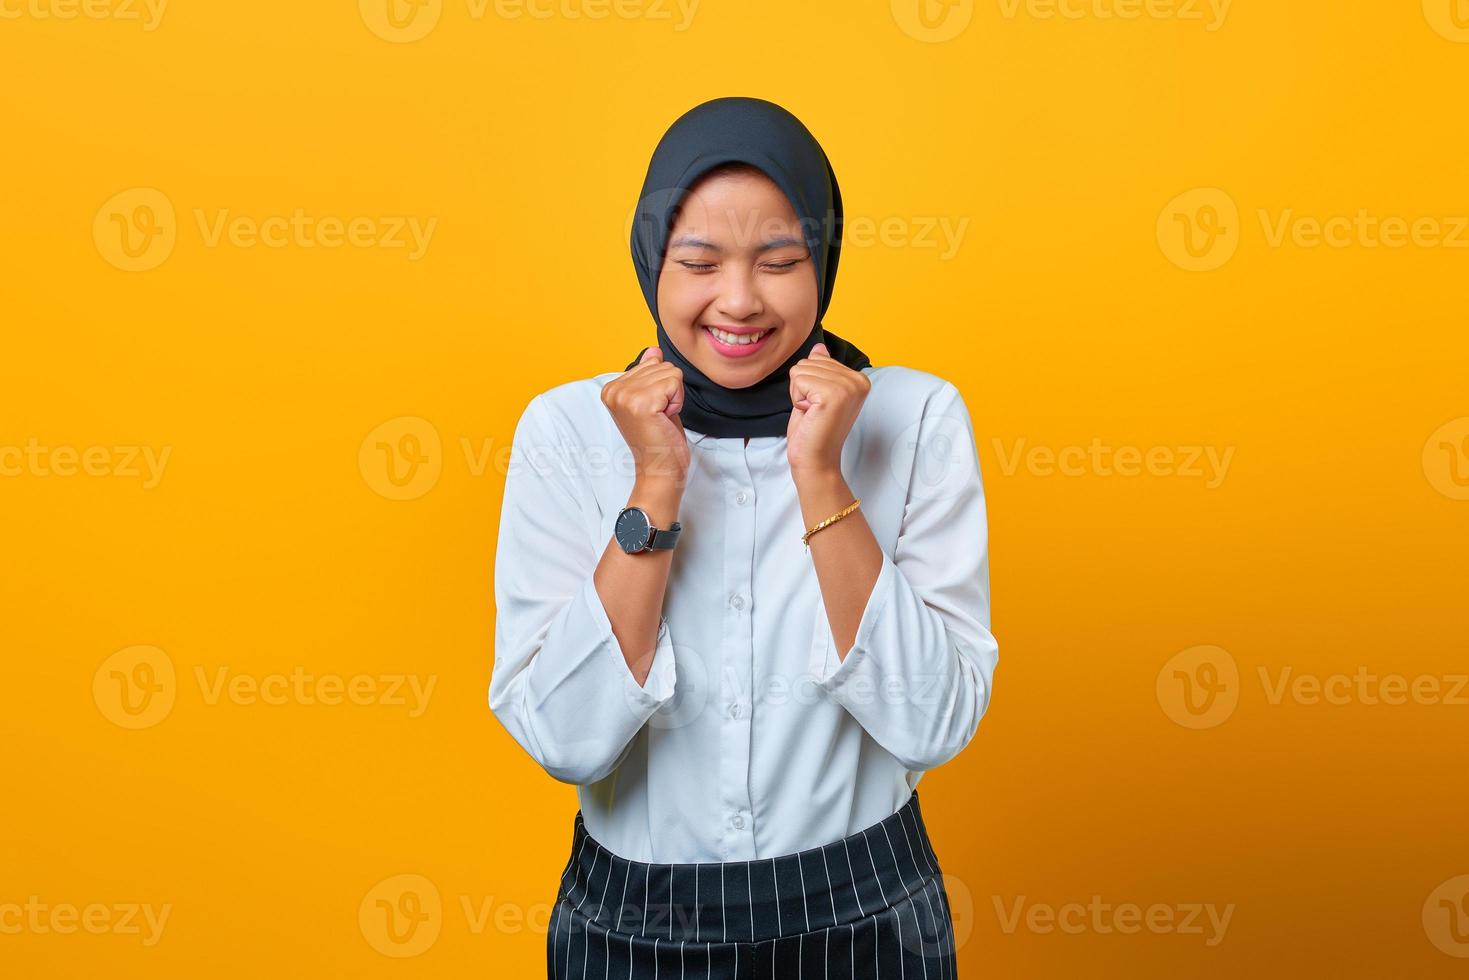 portret van opgewonden mooie aziatische vrouw die succes viert op gele achtergrond foto